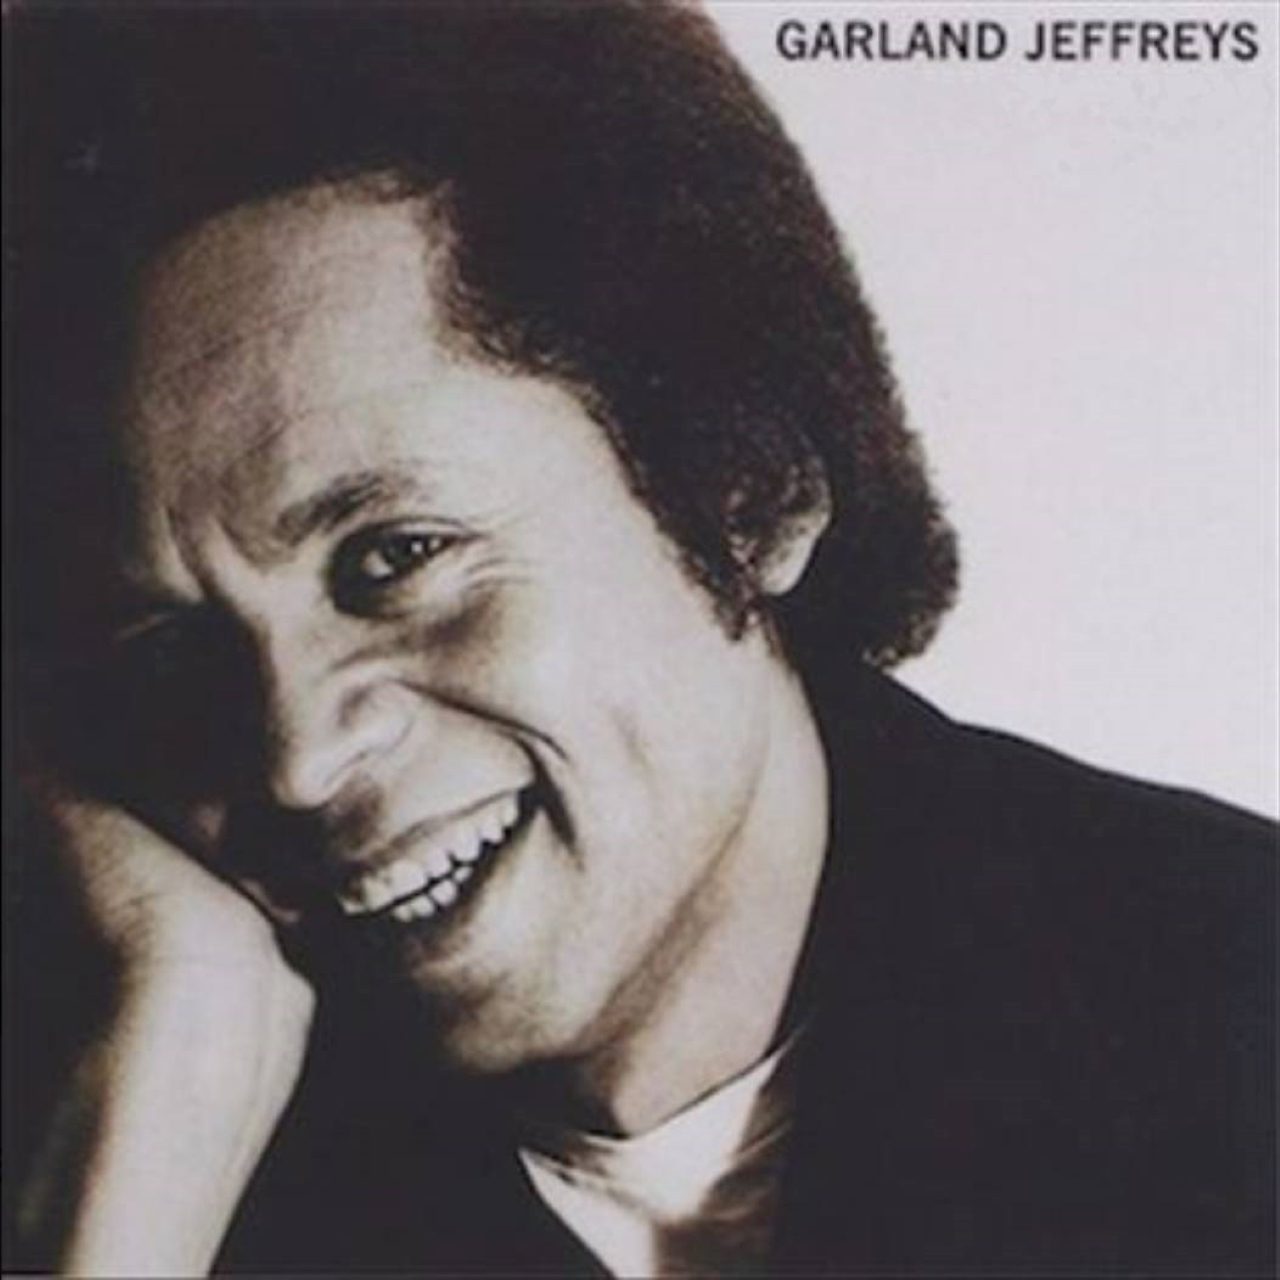 Garland Jeffrey